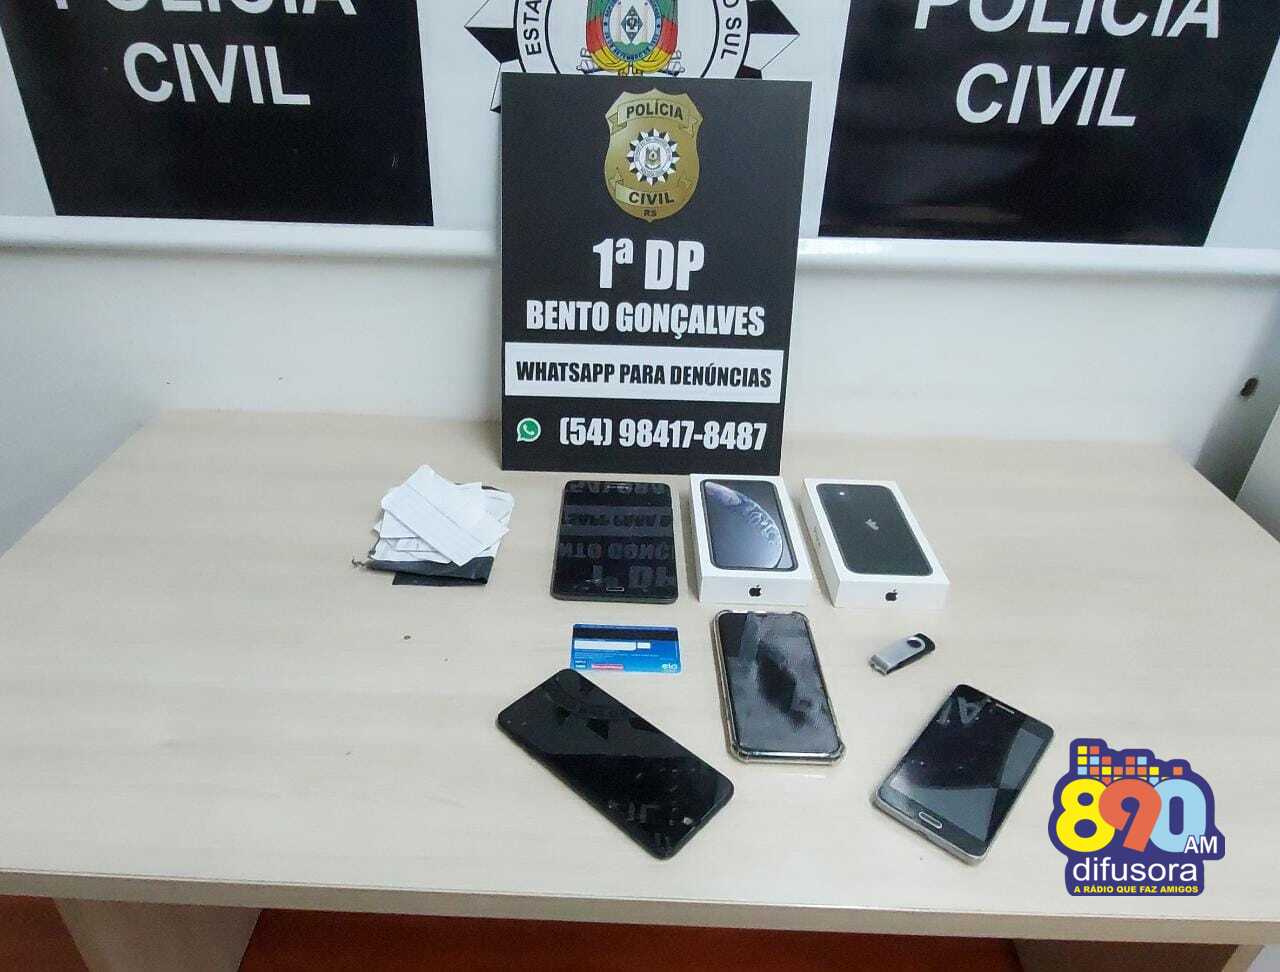 Polícia Civil realiza buscas e apreensões durante a Operação Pavão, em Bento Gonçalves